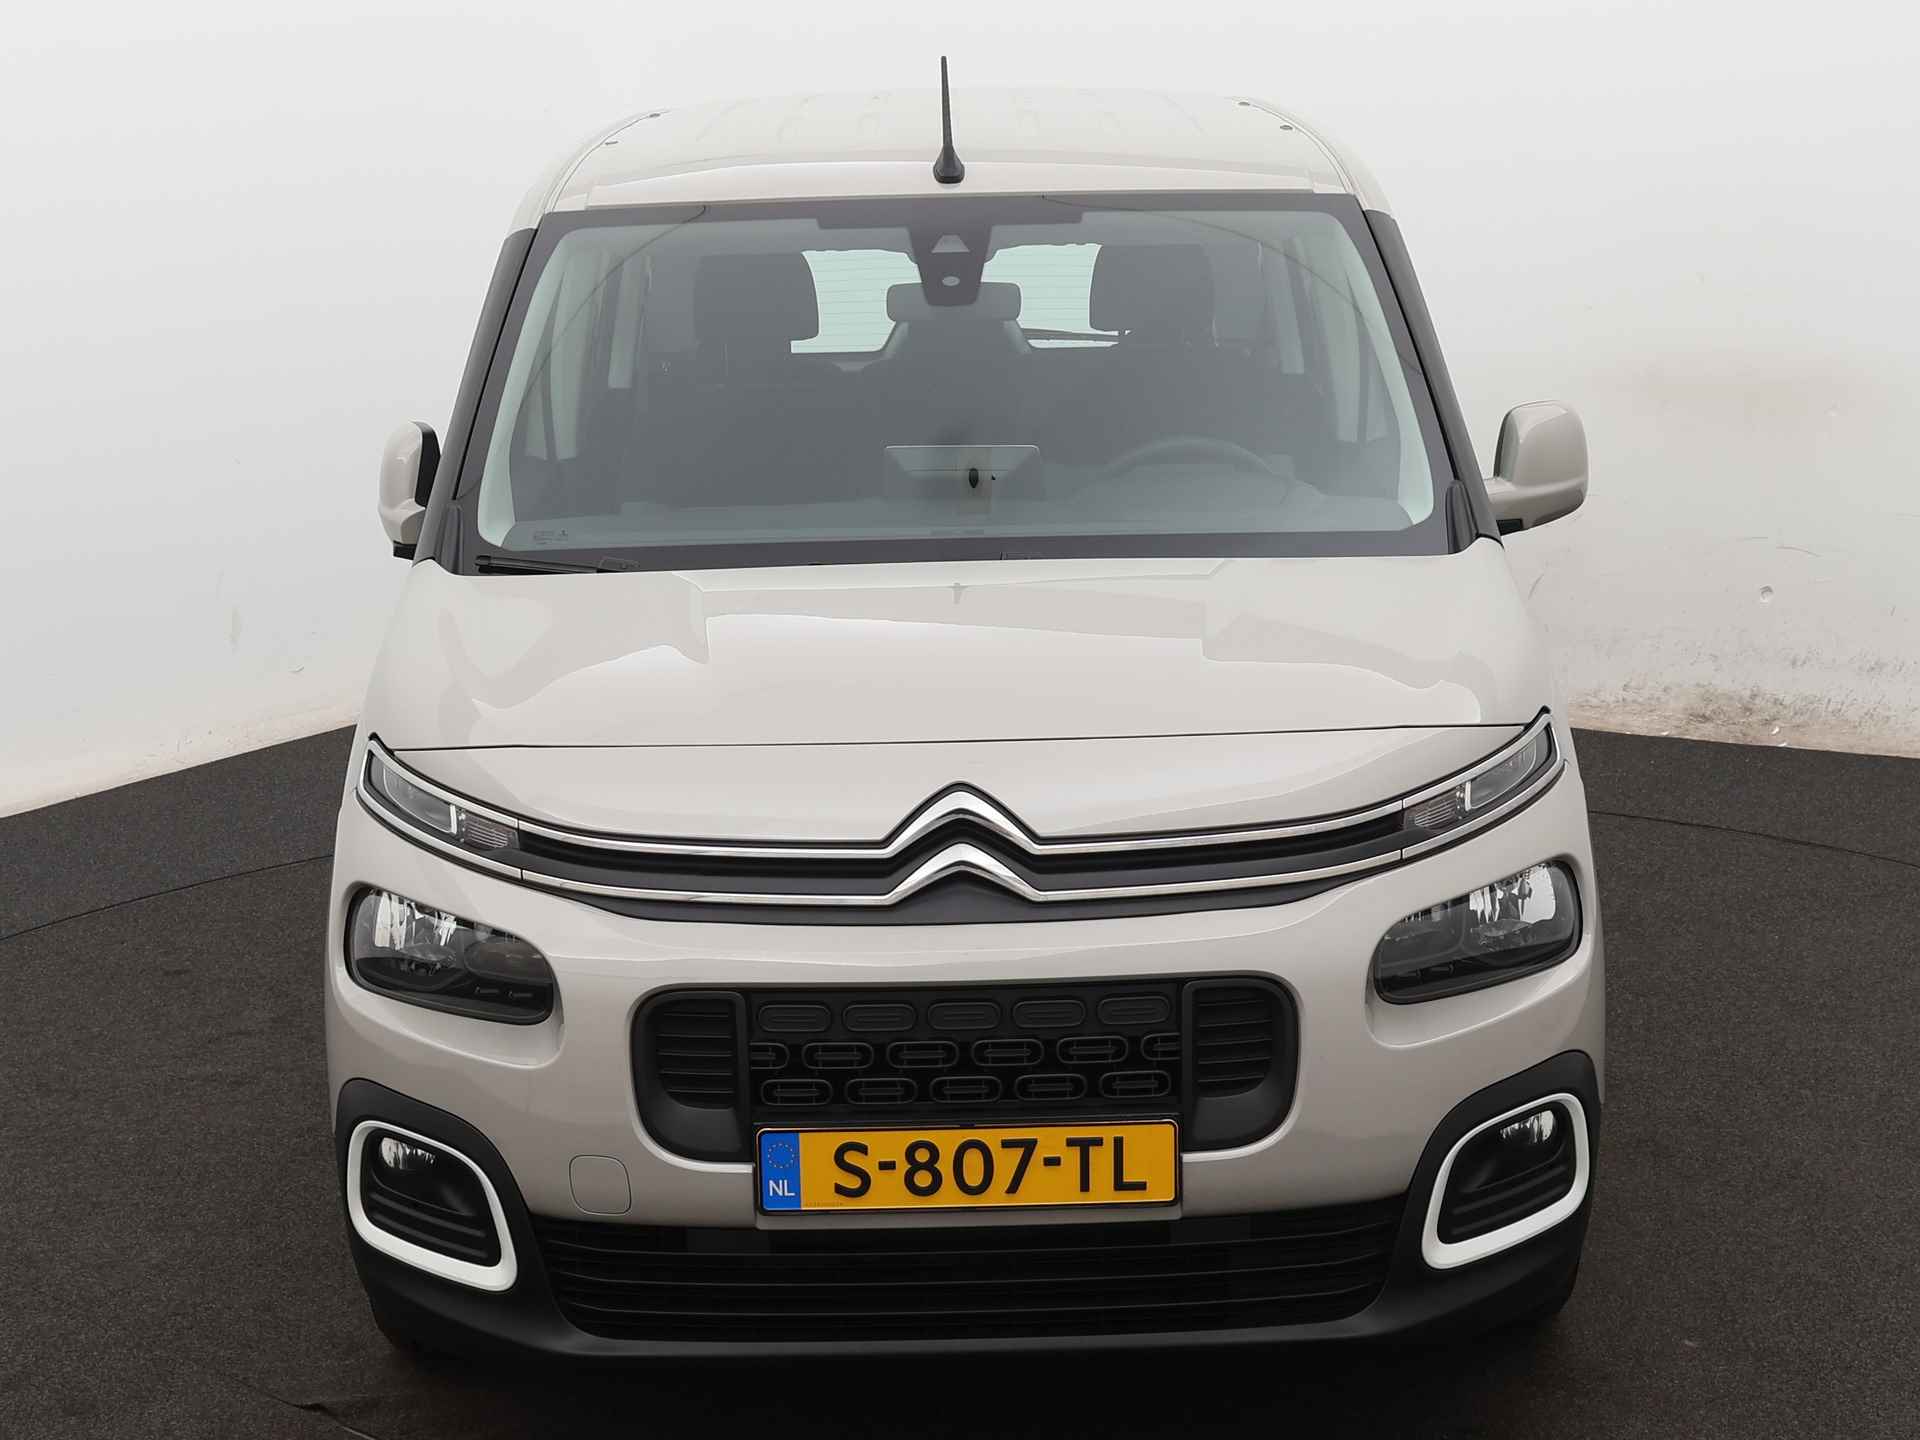 Citroën Berlingo 1.2 PureTech Live Ingepland voor nieuwe bodemverlaging t.b.v. rolstoelvervoer (Prijs incl. bodemverlaging) - 23/31